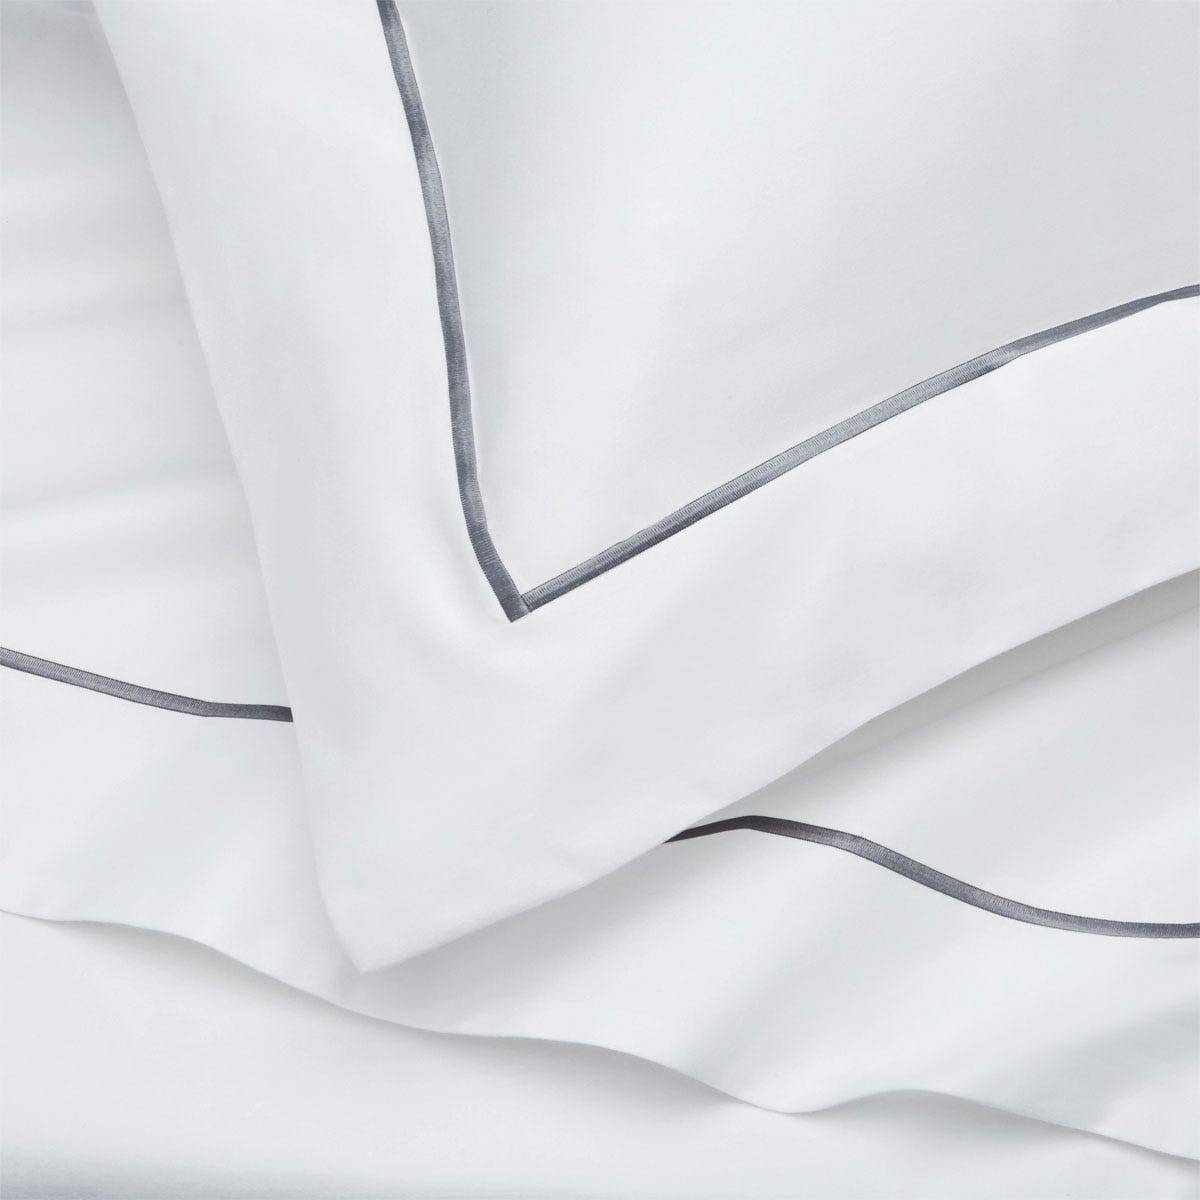 Pair of Mayfair Oxford Pillowcases - 400 TC - Egyptian Cotton - White/Dark Grey - DUSK